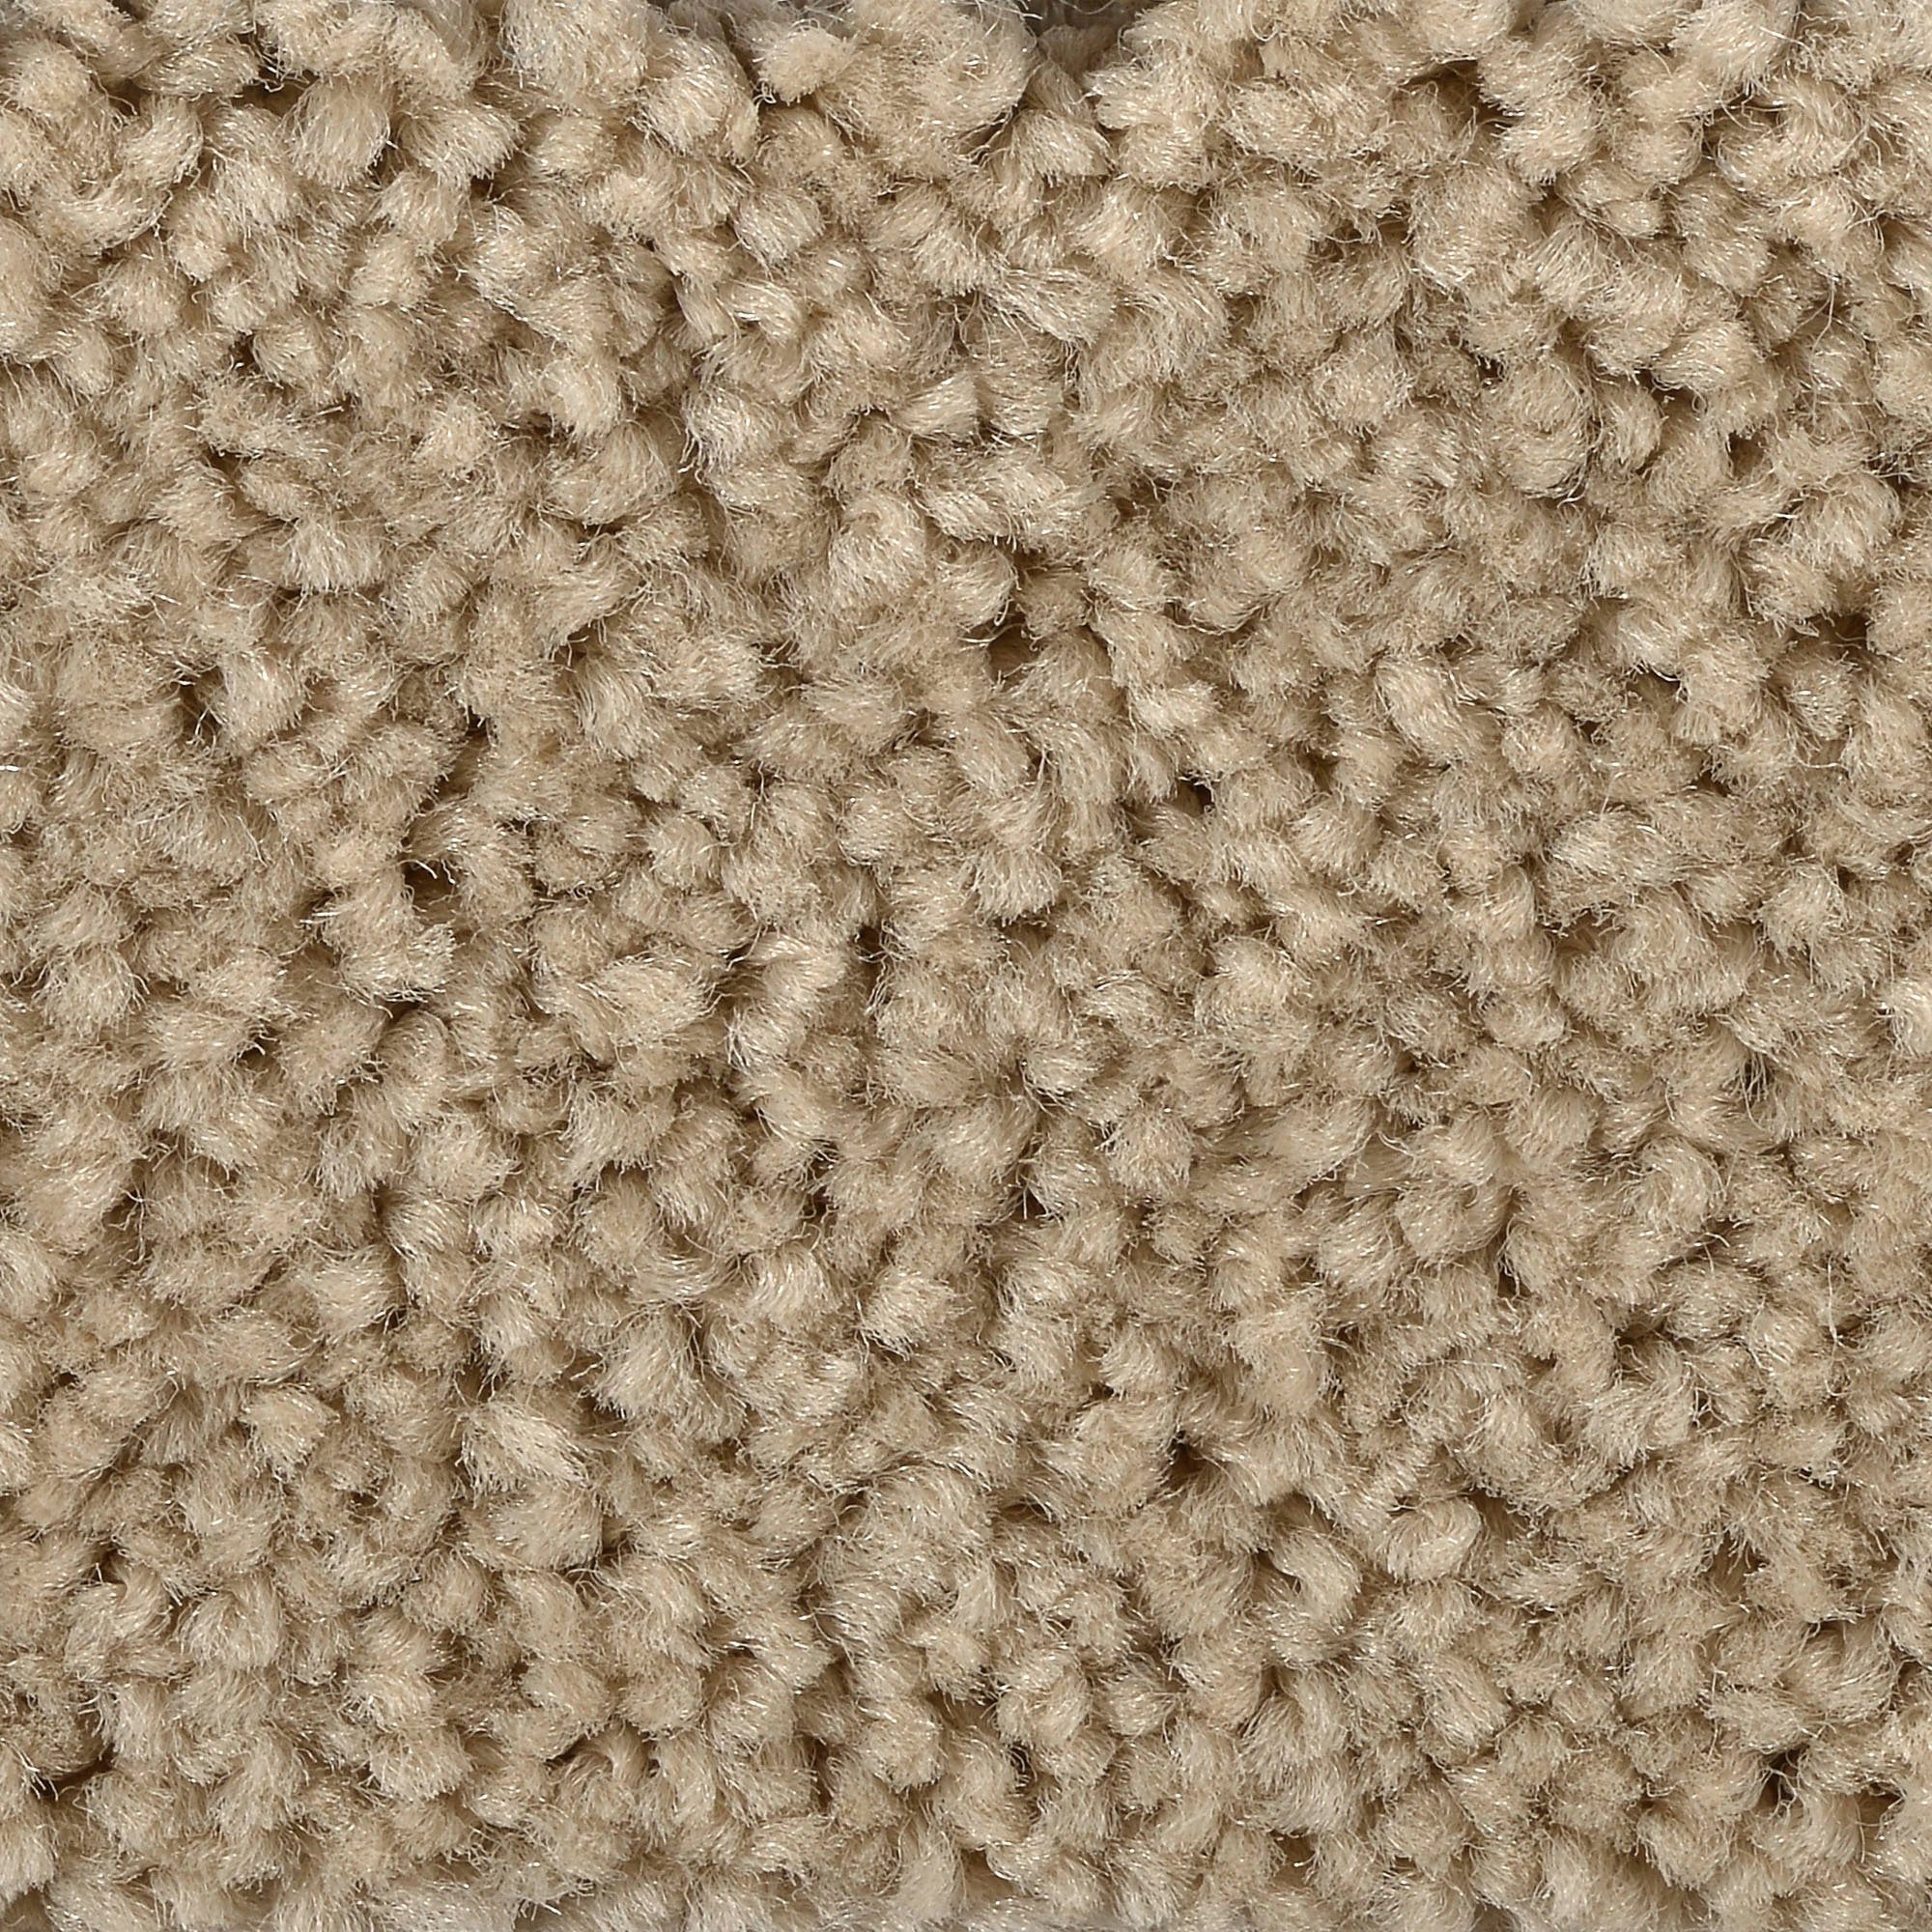 Teppichboden mit Muster ausgefallen Teppich Auslegware beige braun ideal  für Schlafzimmer und Wohnzimmer Velours Teppich Meterware 4 und 5 m breit  (4